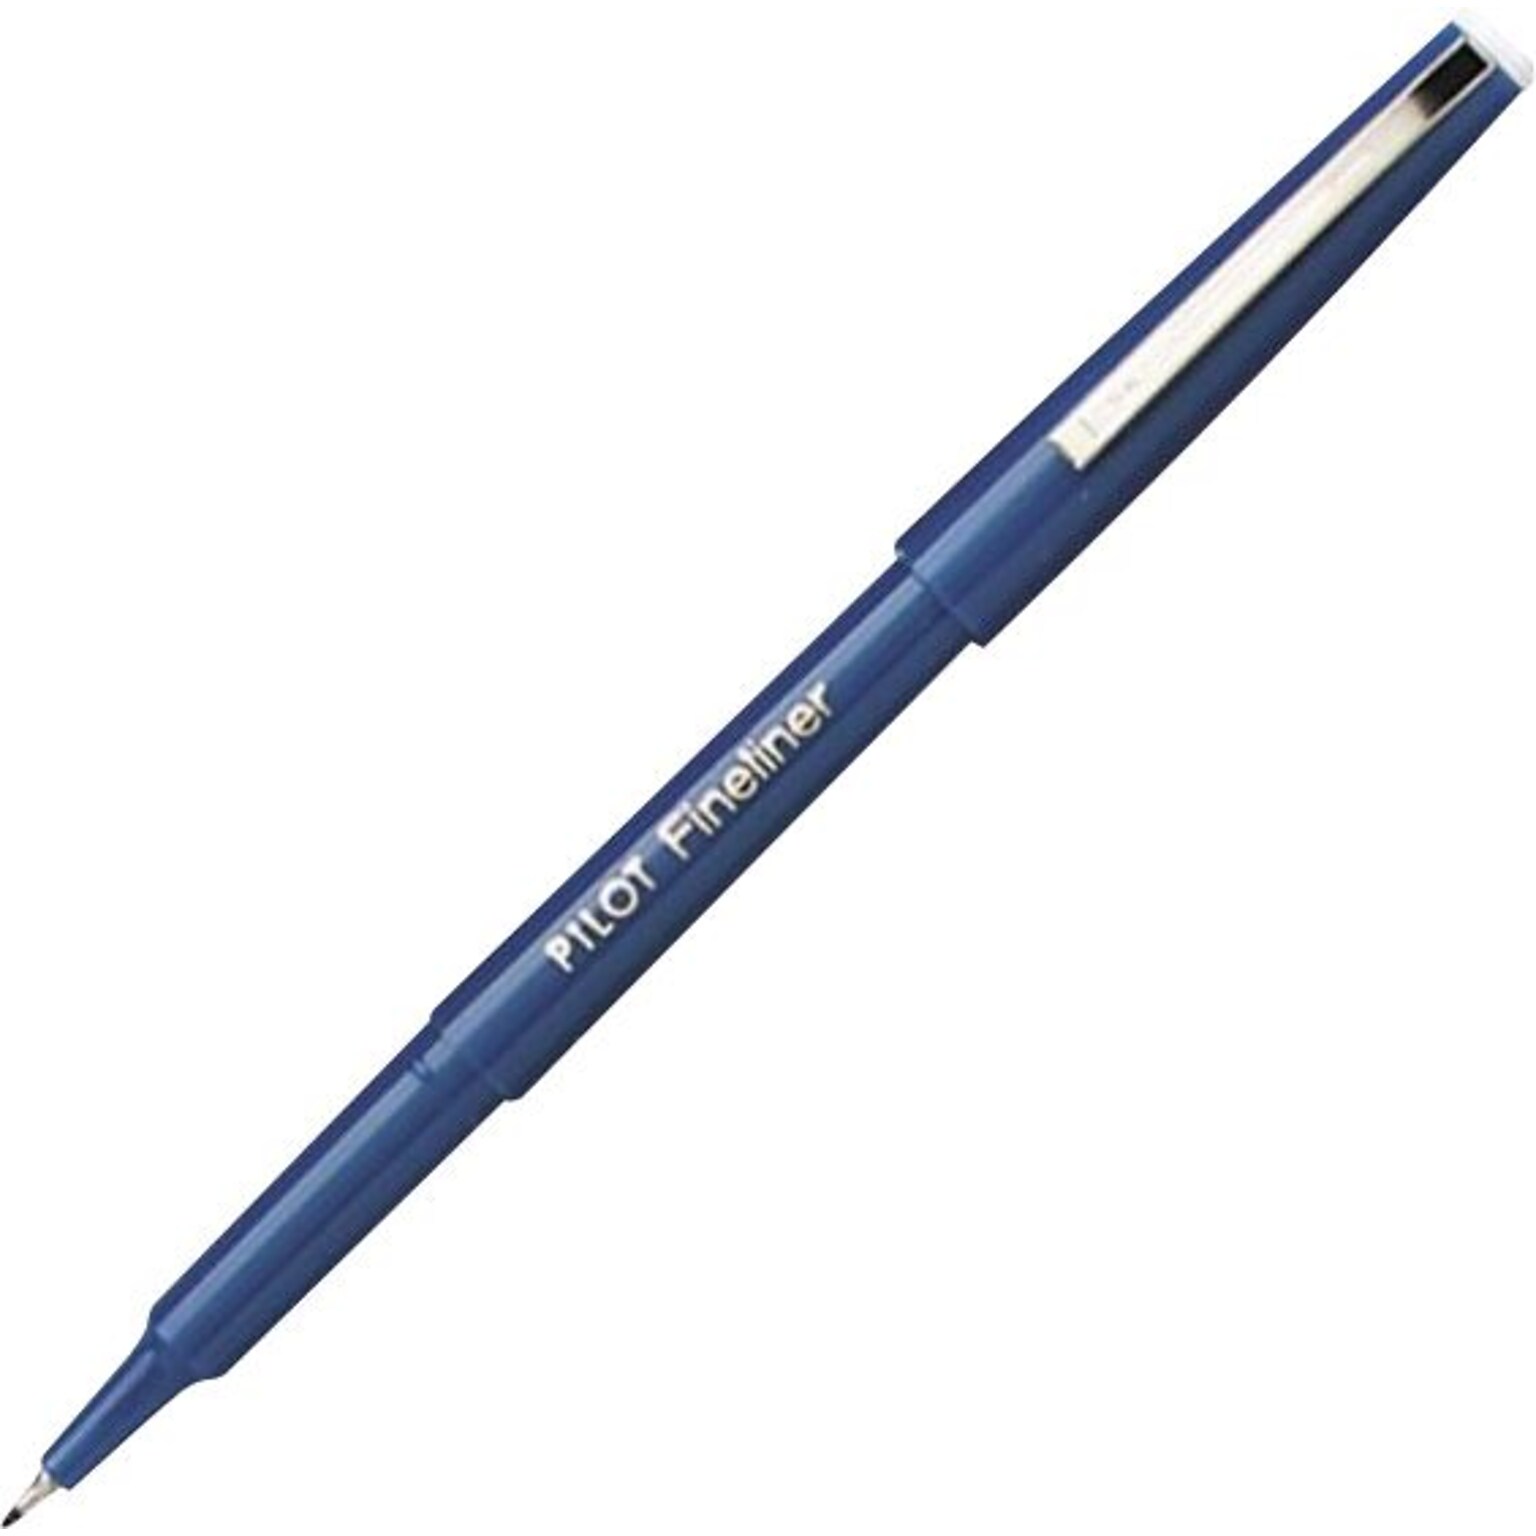 Pilot Fineliner Marker Pen, Fine Point, Blue Ink (11014)